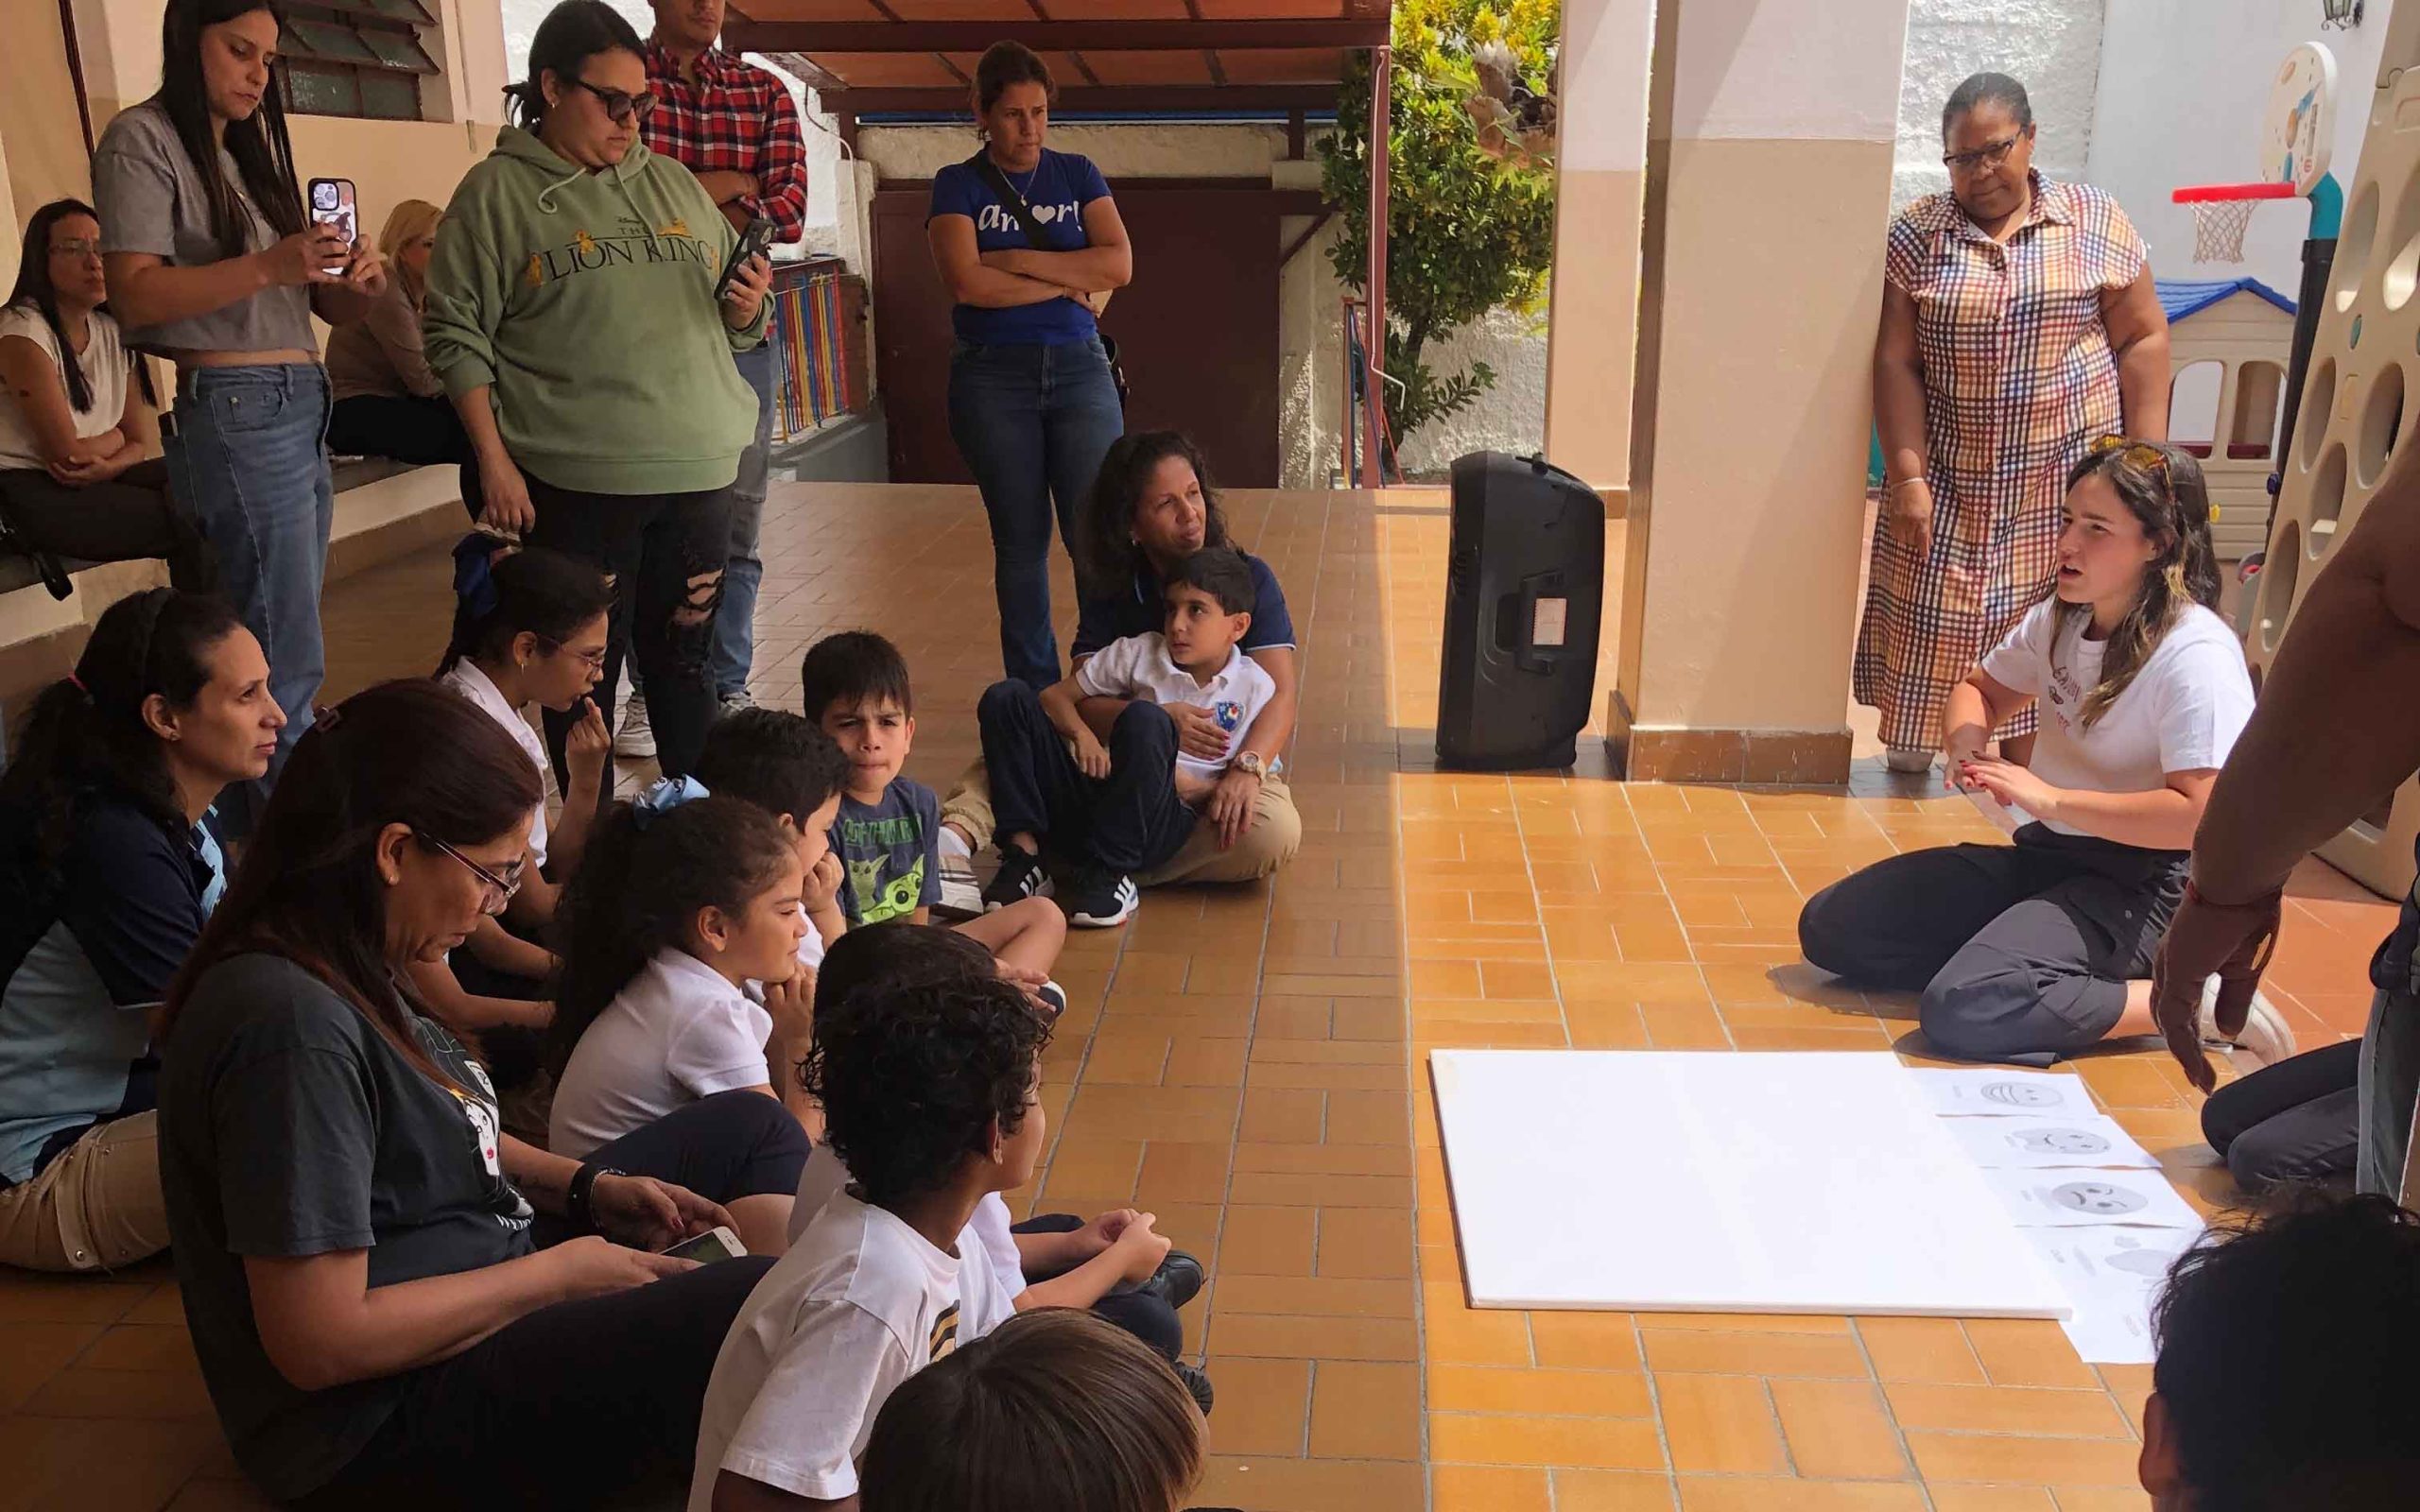 Galit junto a los niños en la primera actividad de "Emocionarte" en el Colegio Nuestra Señora de la Consolación. / Actividad de "Emocionarte" promoviendo la expresión emocional a través del arte.